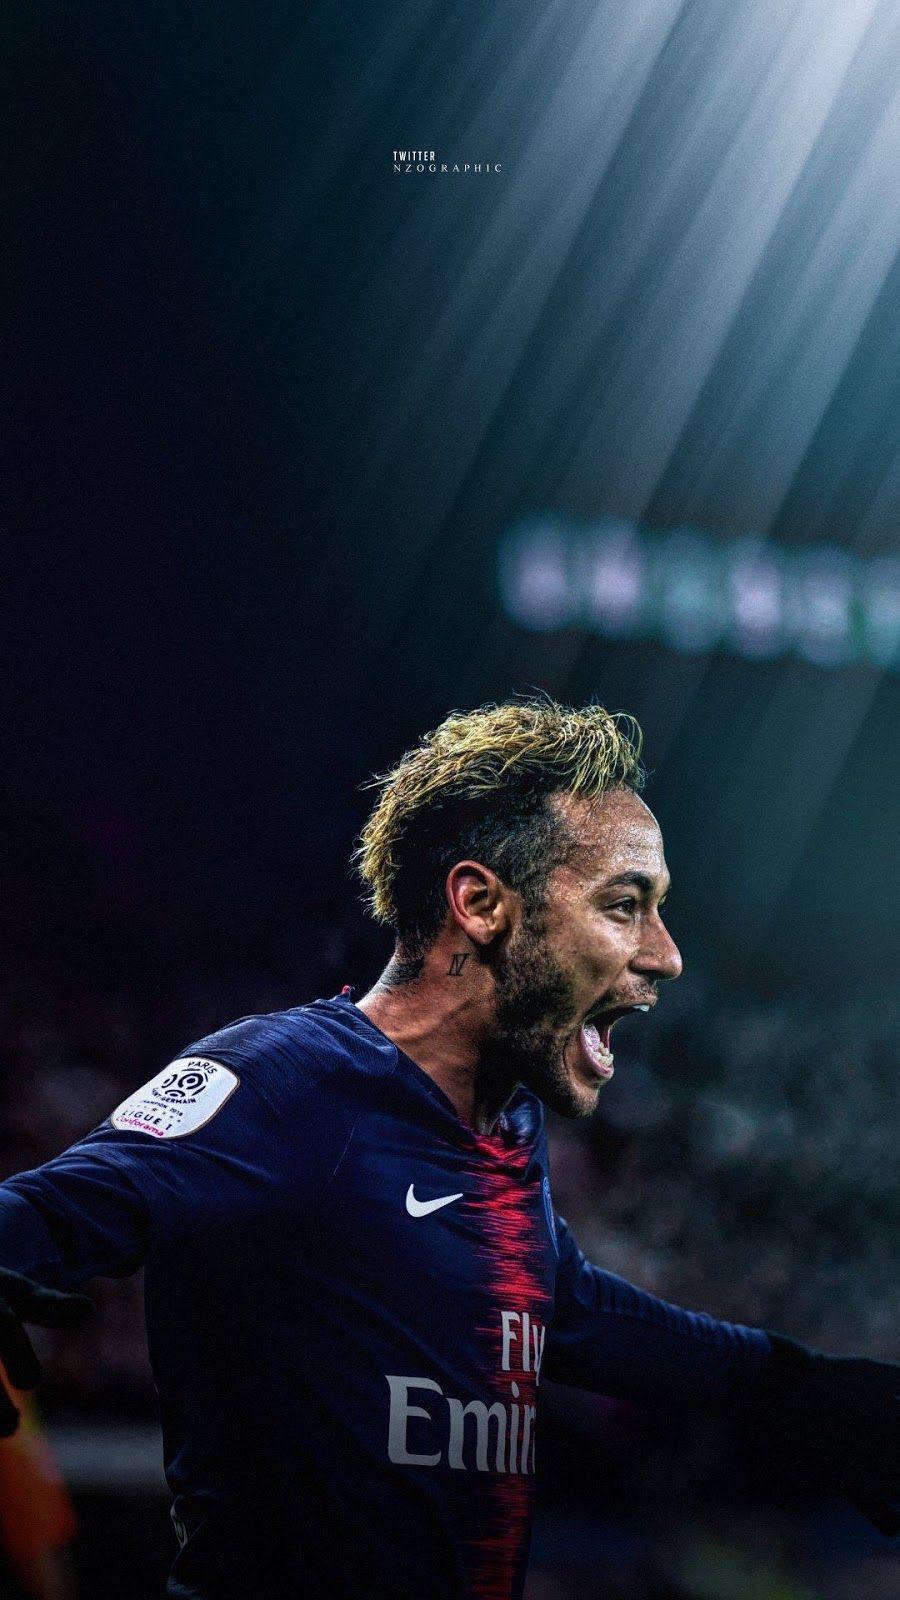 Hình nền Neymar đẹp sẽ khiến bạn bị thu hút ngay lập tức với vẻ đẹp và phong cách đầy sức sống của siêu sao bóng đá này. Hãy xem ngay và cảm nhận sự khác biệt mà nó mang lại cho màn hình của bạn!